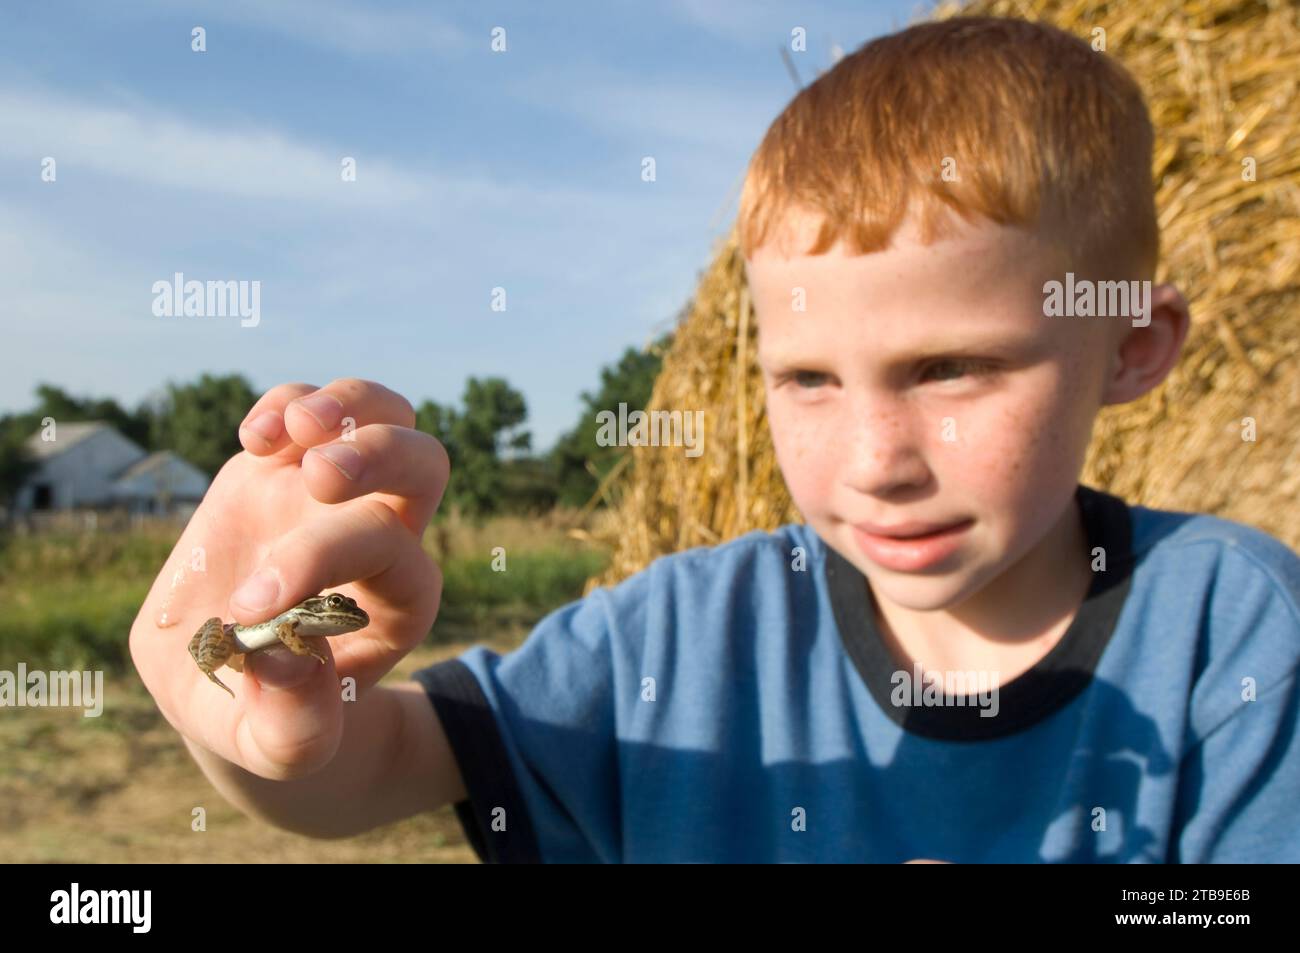 Un jeune garçon regarde une grenouille léopard des Plaines (Rana blairi) devant une balle de foin dans un champ de ferme ; Greenleaf, Kansas, États-Unis d'Amérique Banque D'Images